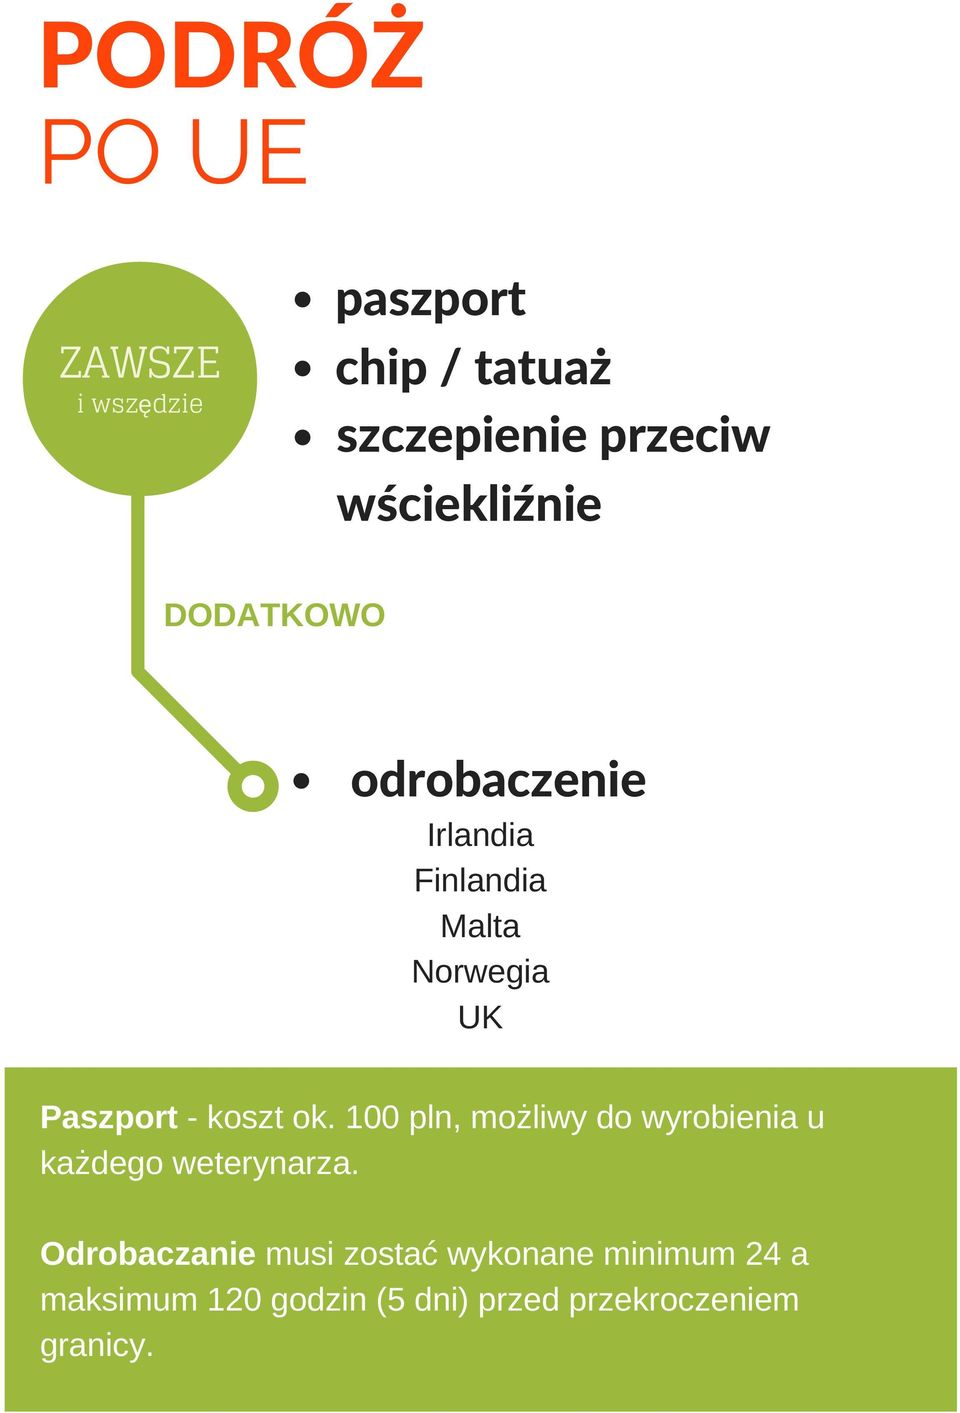 Paszport koszt ok. 100 pln, możliwy do wyrobienia u każdego weterynarza.